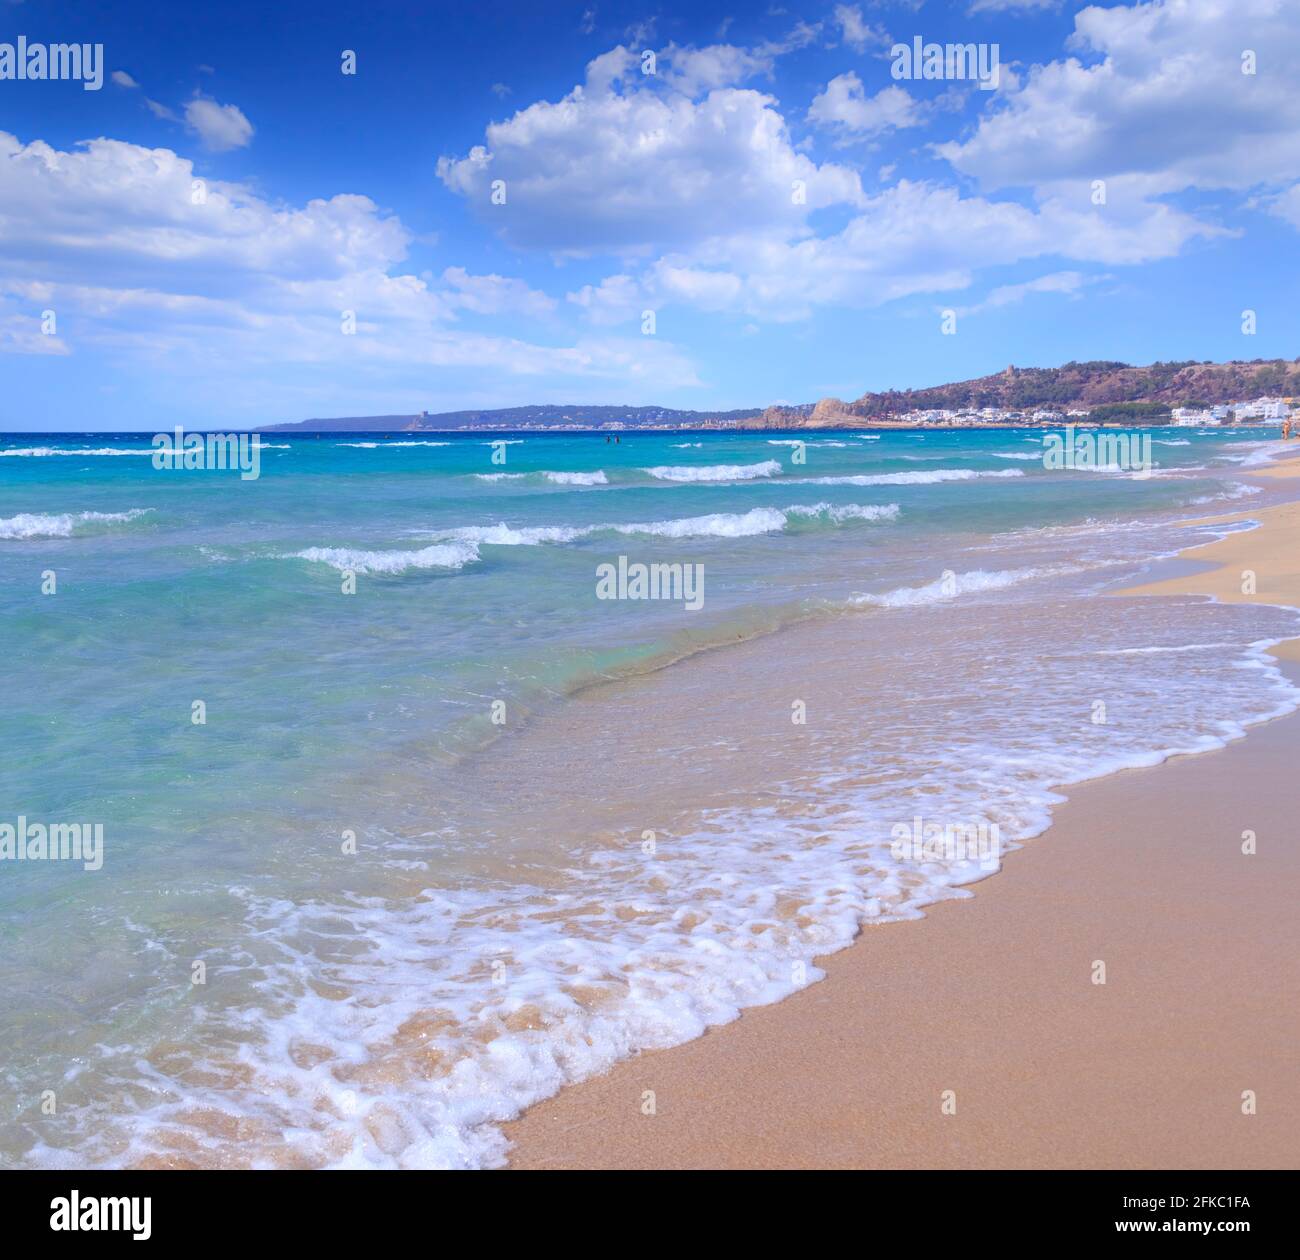 Lido Conchiglie Beach in Salento, Apulia (Italy). Stock Photo